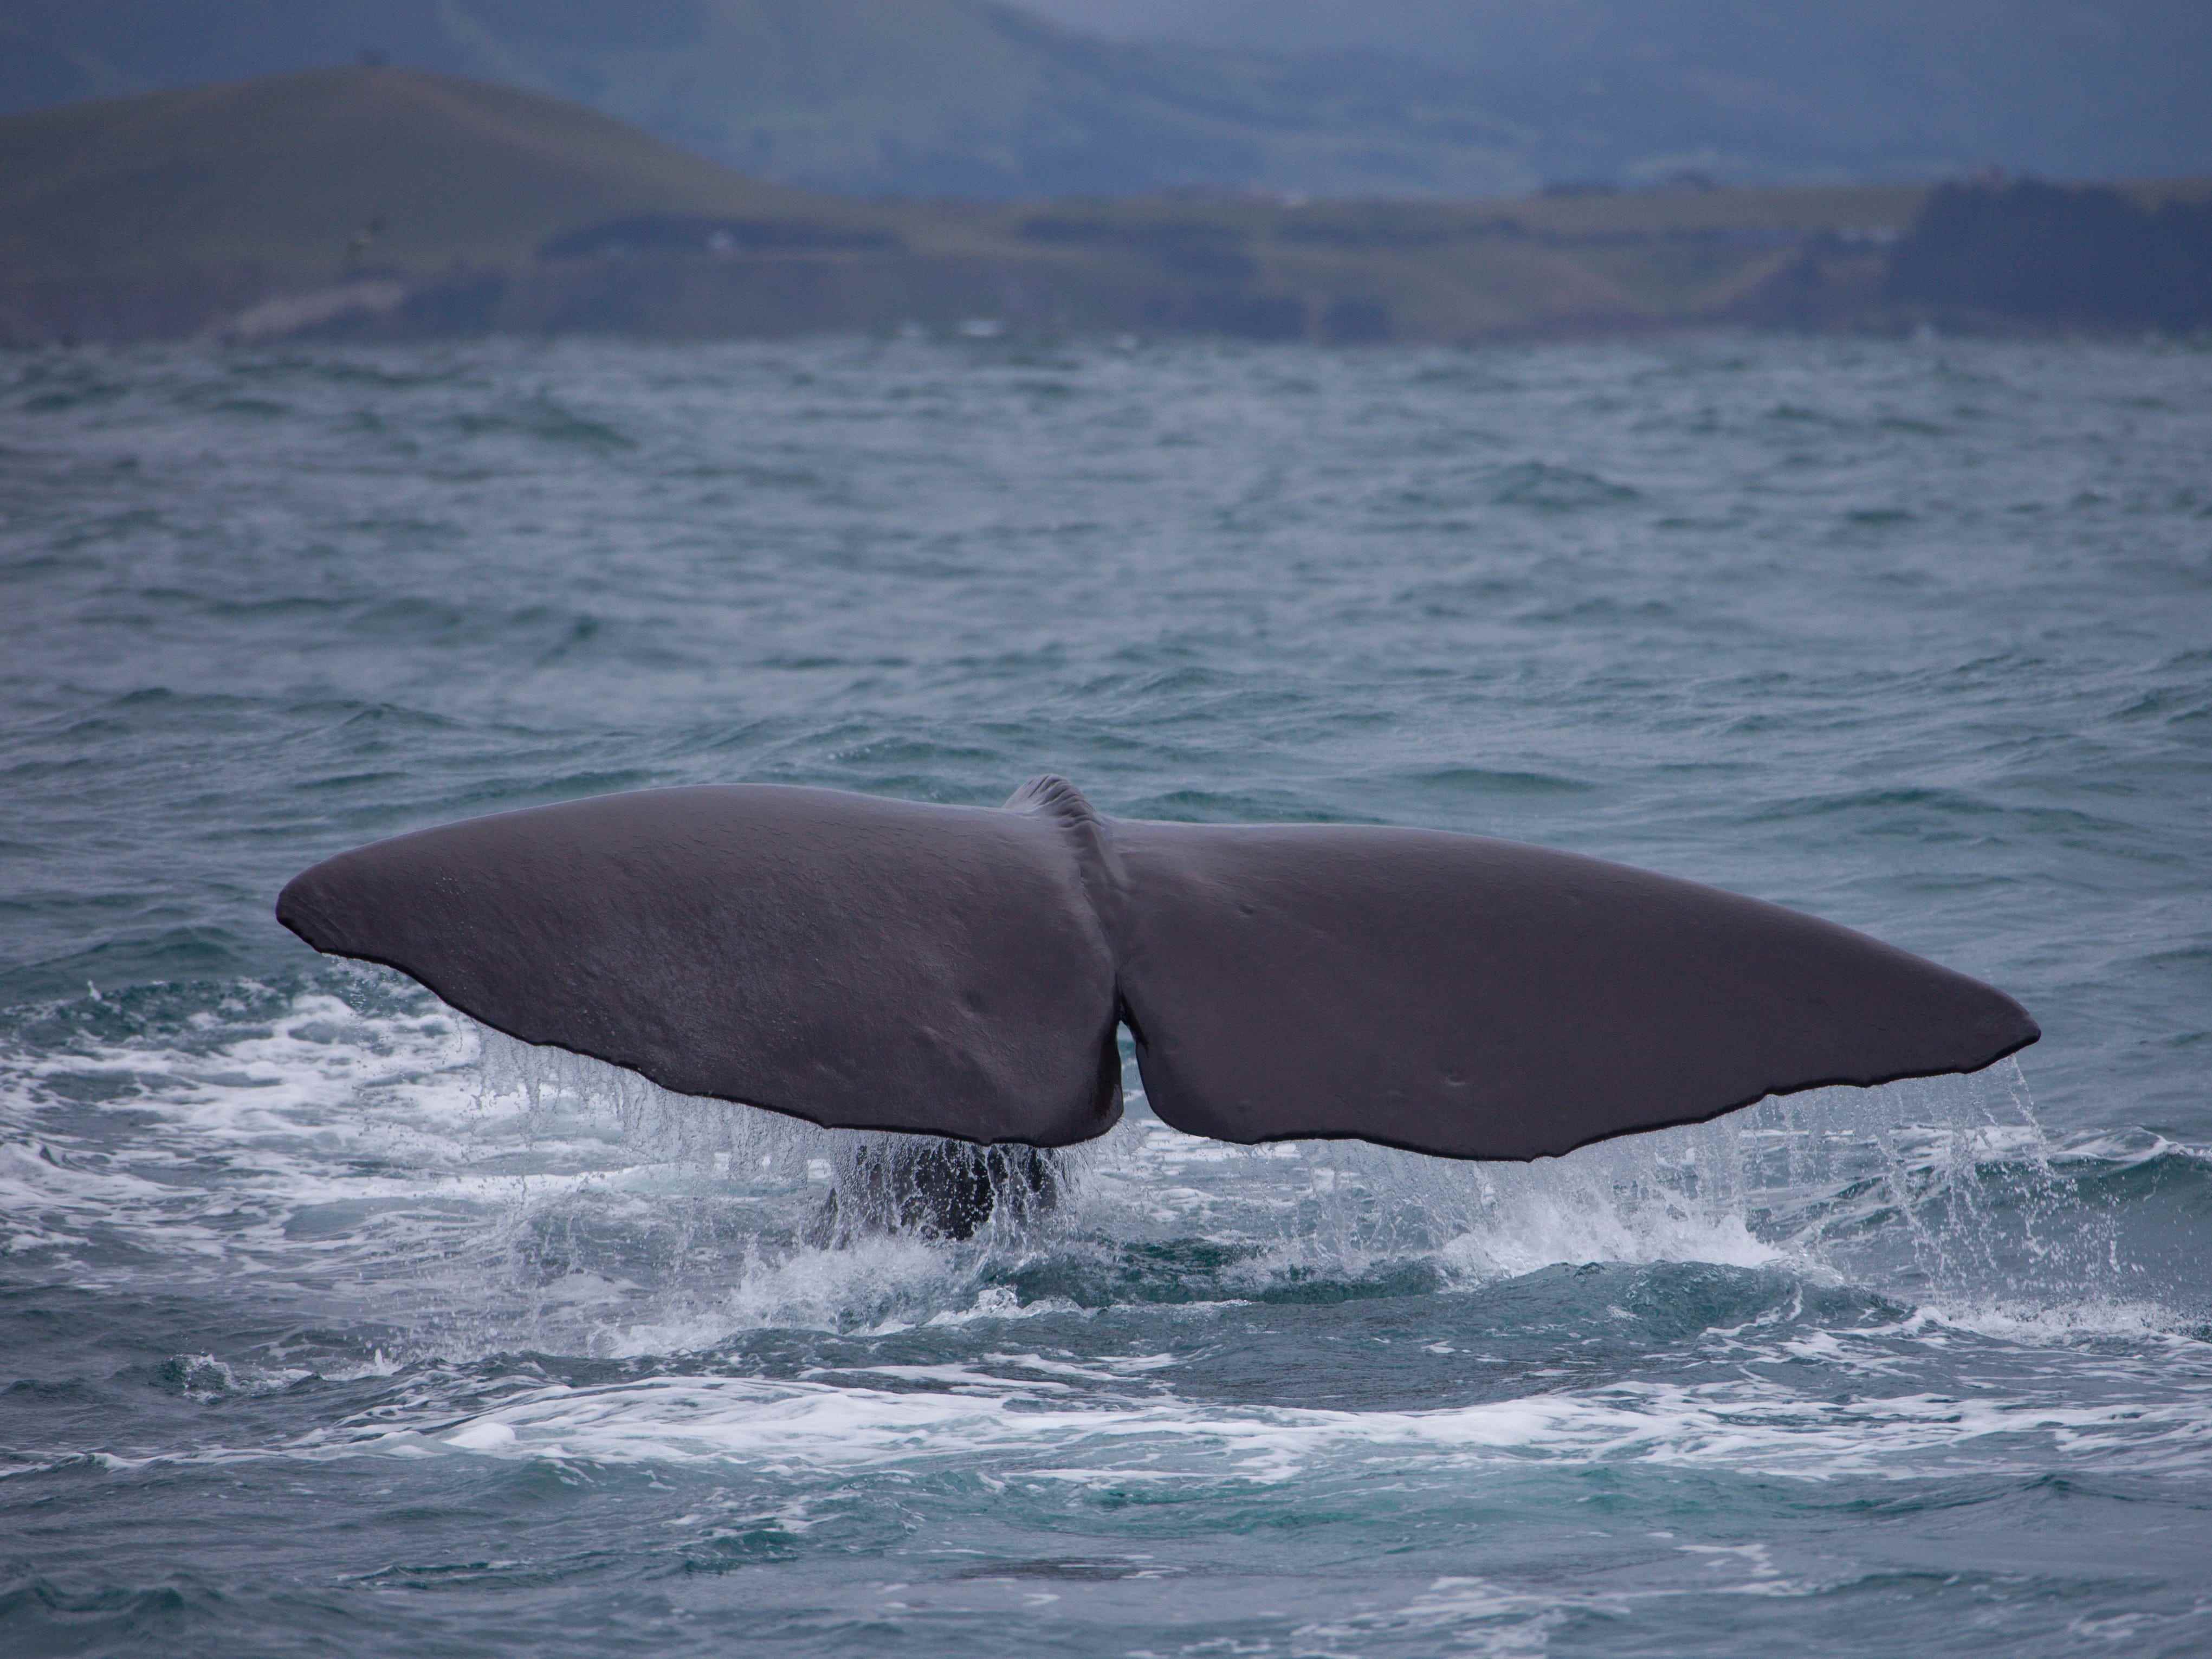 Das Endstück eines Pottwals wird auf einer Bootstour mit Touristen am 7. Dezember 2010 in Kaikoura, Südinsel, Neuseeland, gesehen.